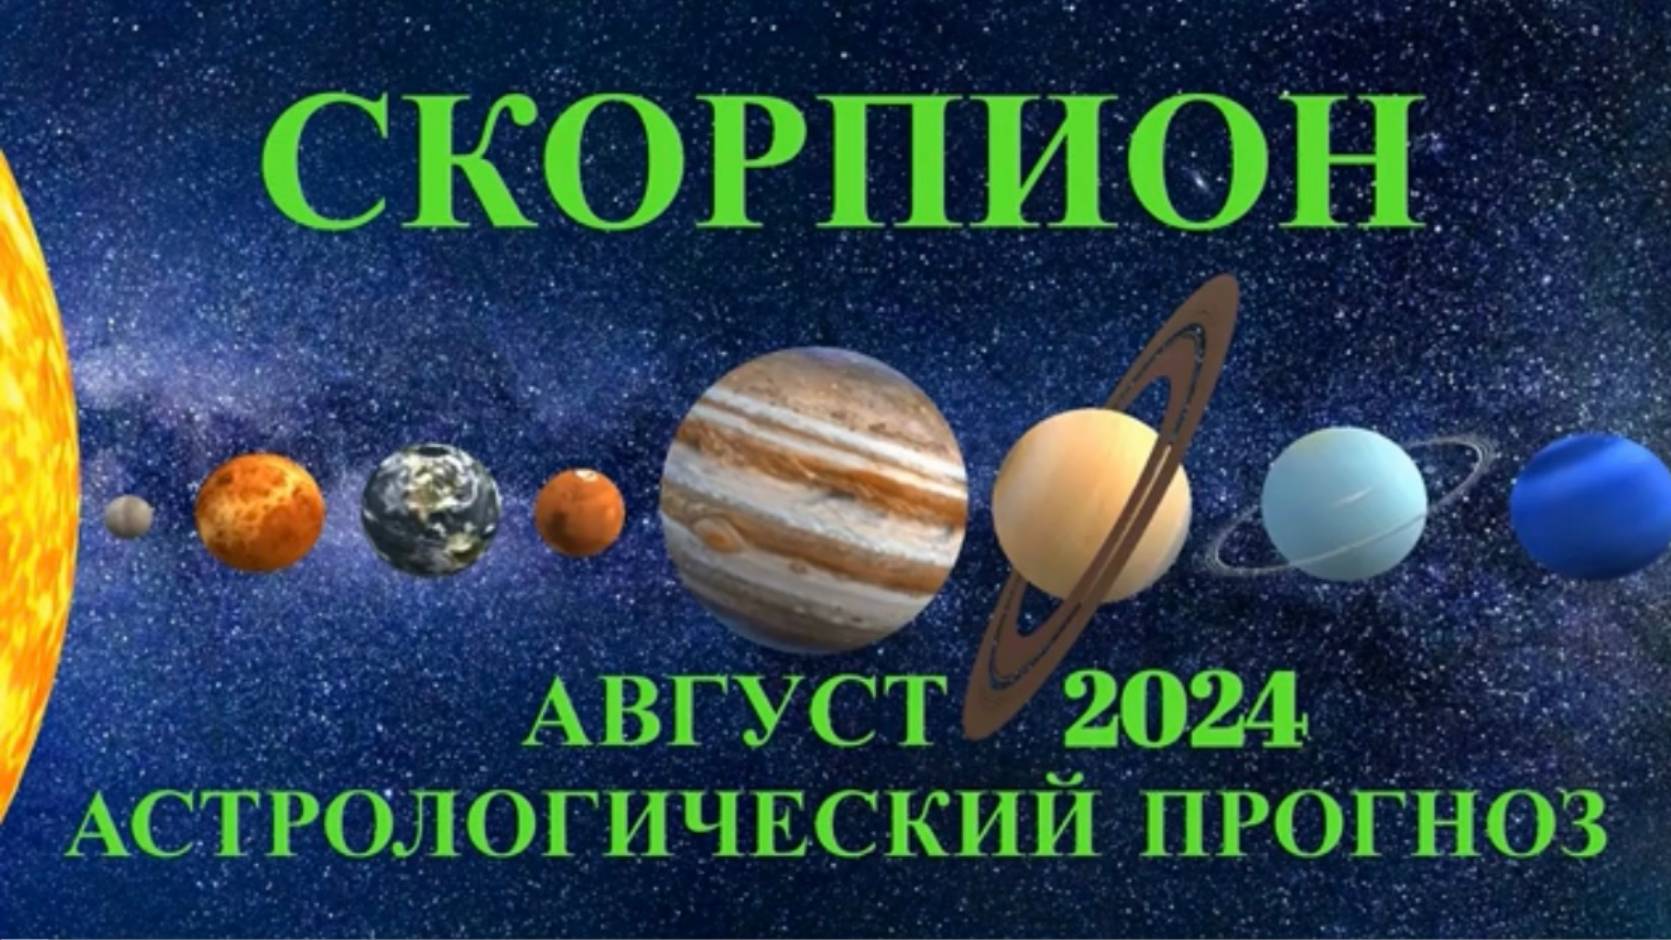 СКОРПИОН: "АСТРОЛОГИЧЕСКИЙ ПРОГНОЗ на АВГУСТ-2024!!!"